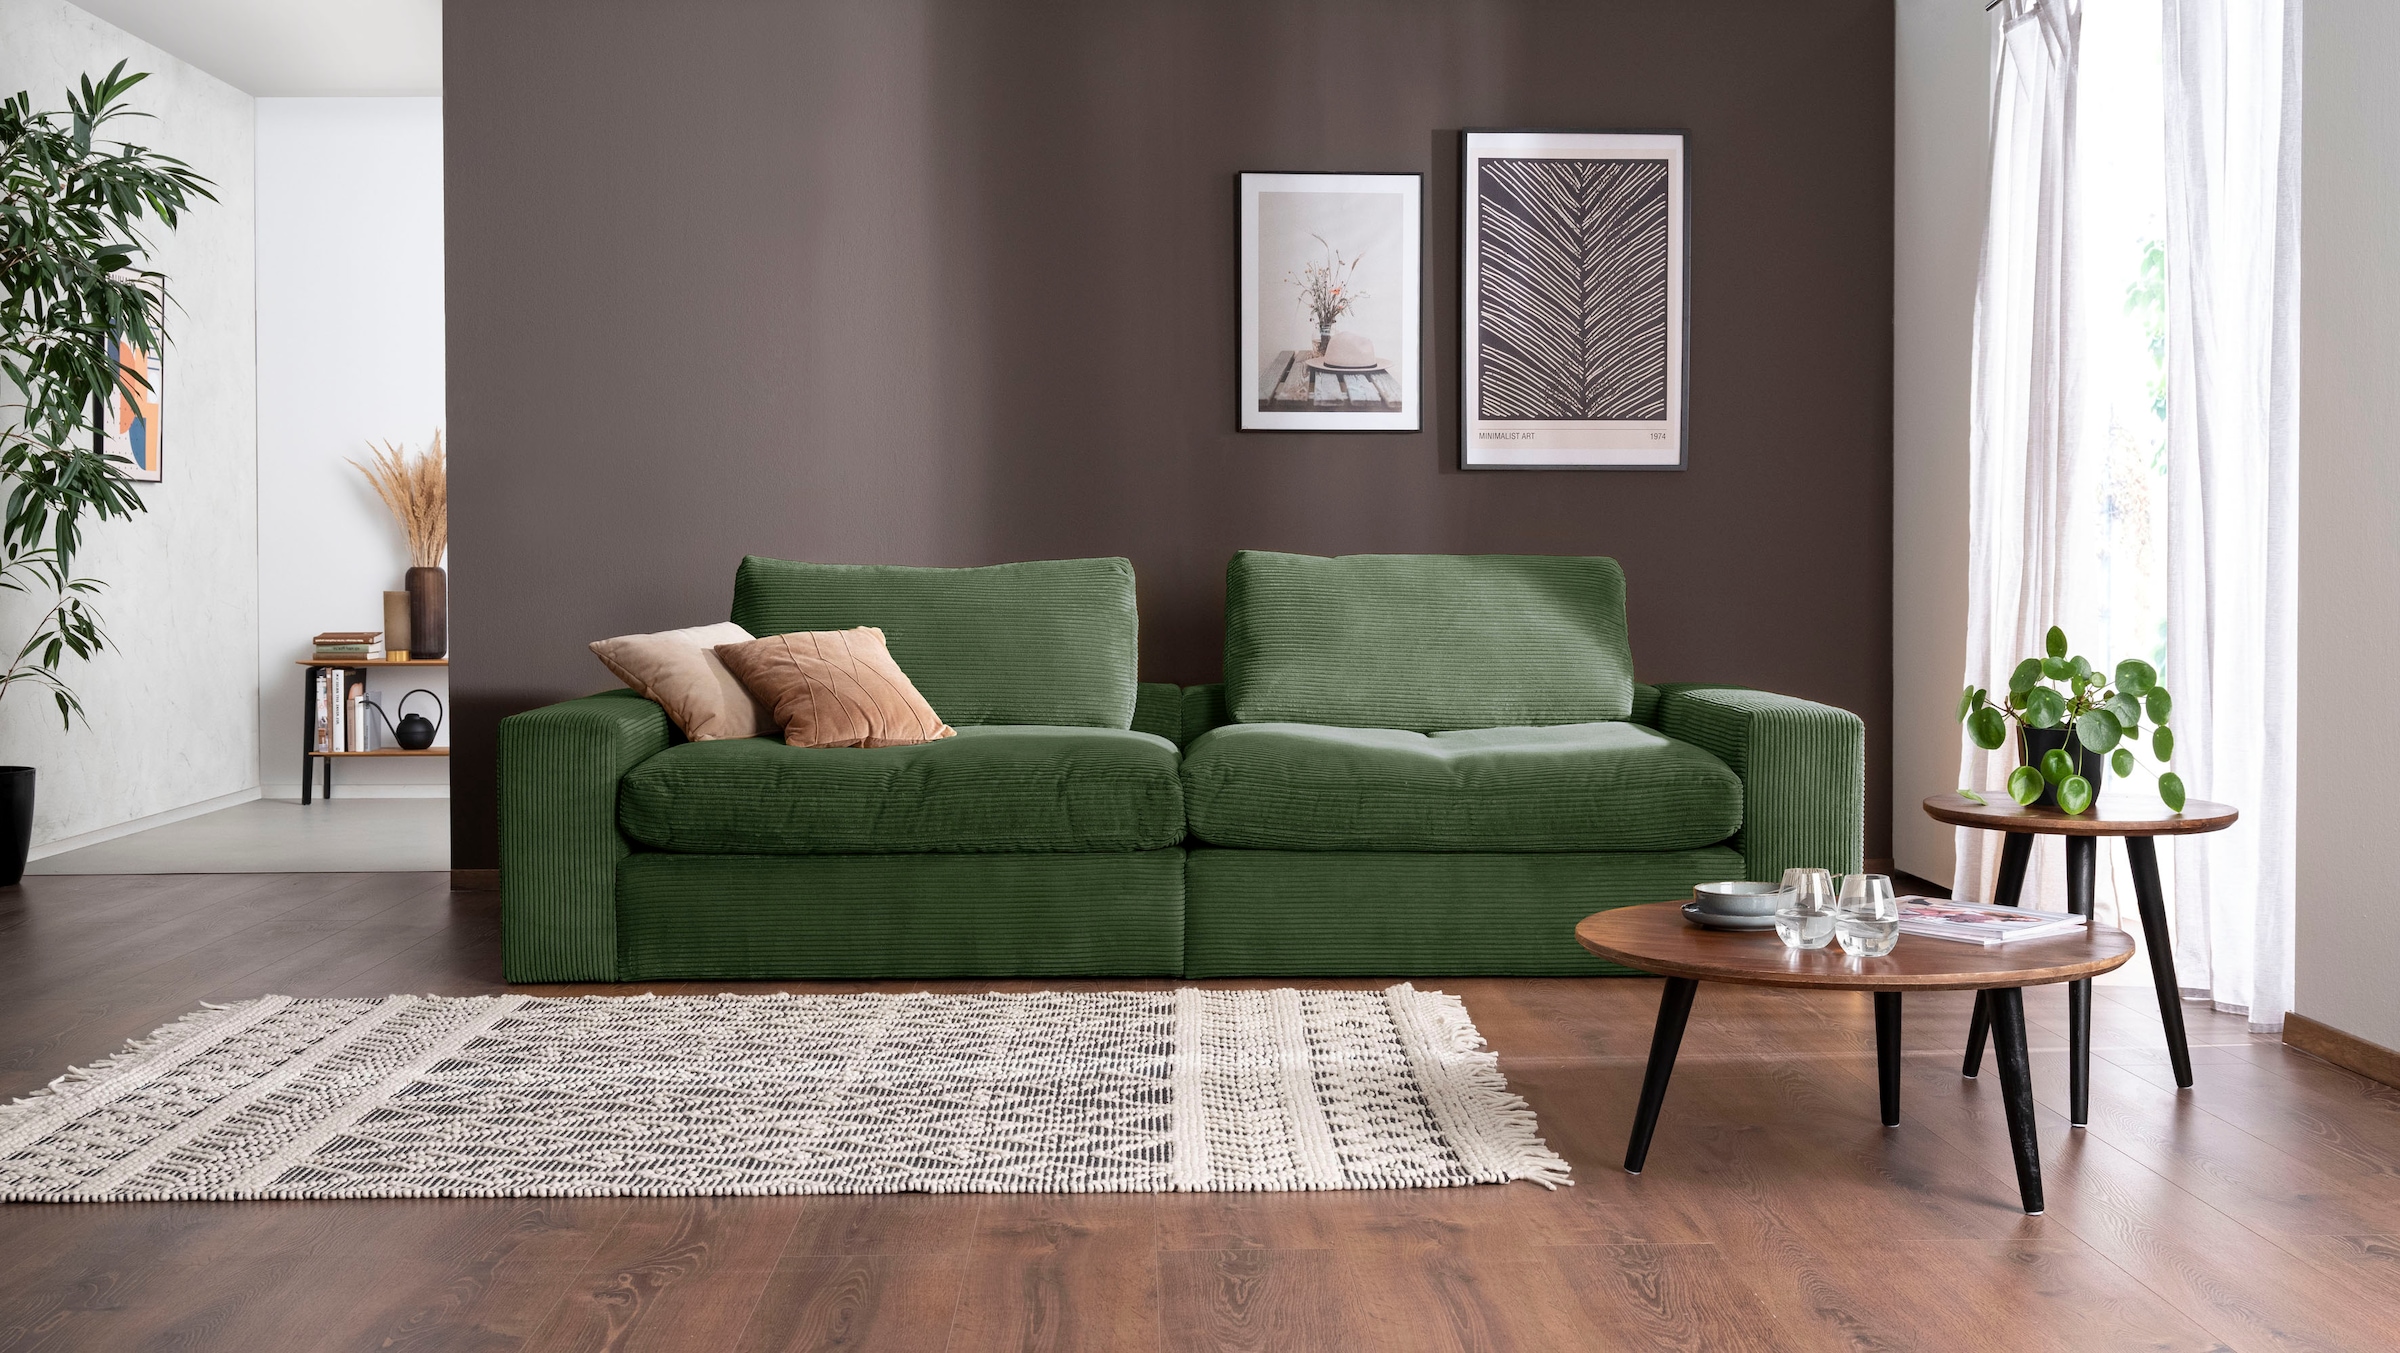 Big-Sofa »Sandy«, 296 cm breit und 98 cm tief, in modernem Cordstoff